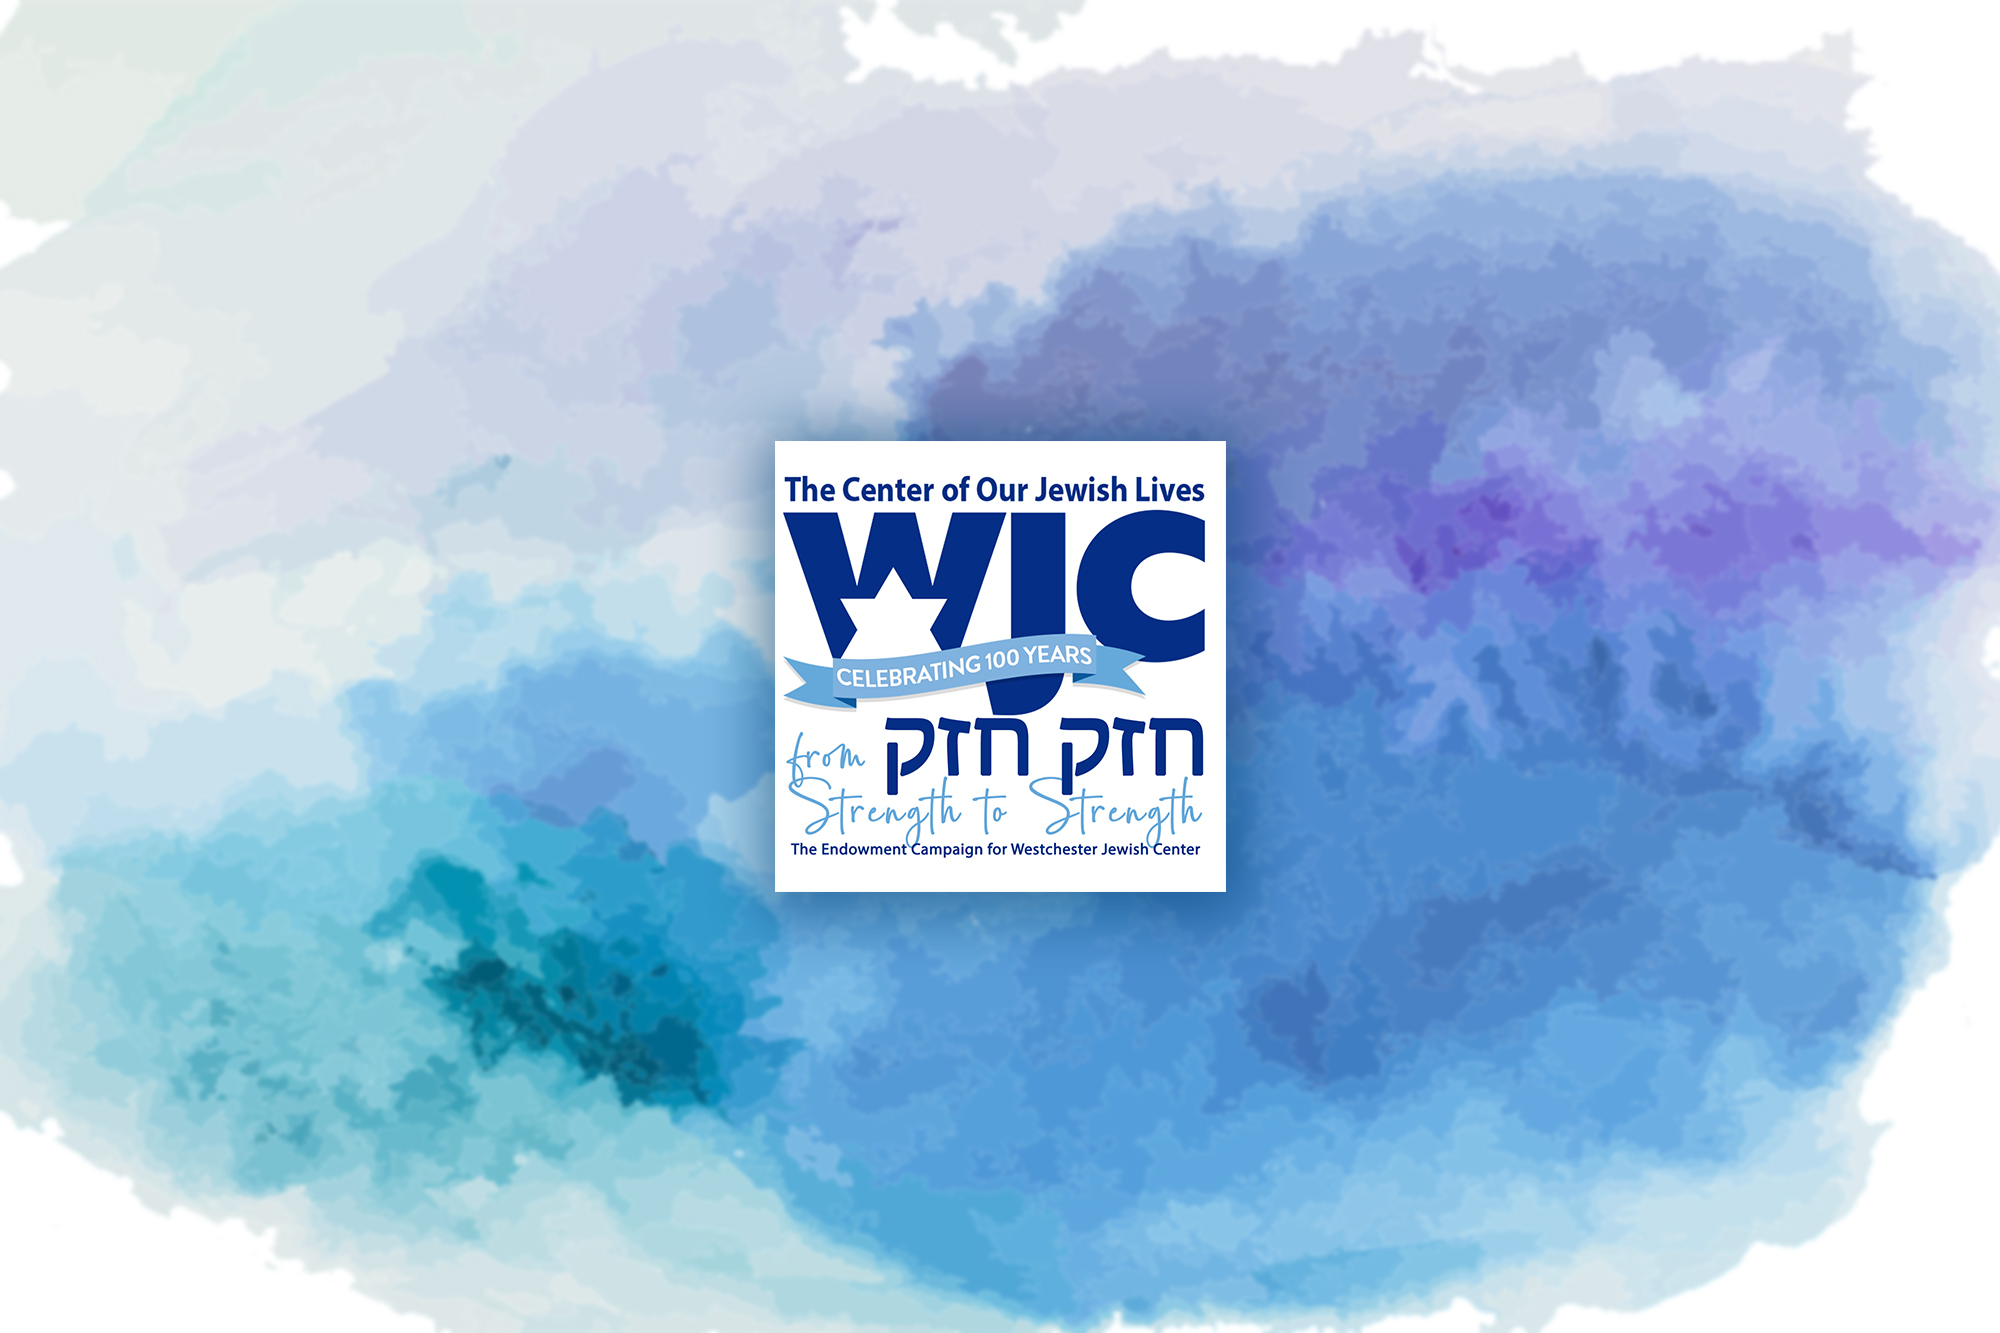 WJC Endowment Campaign